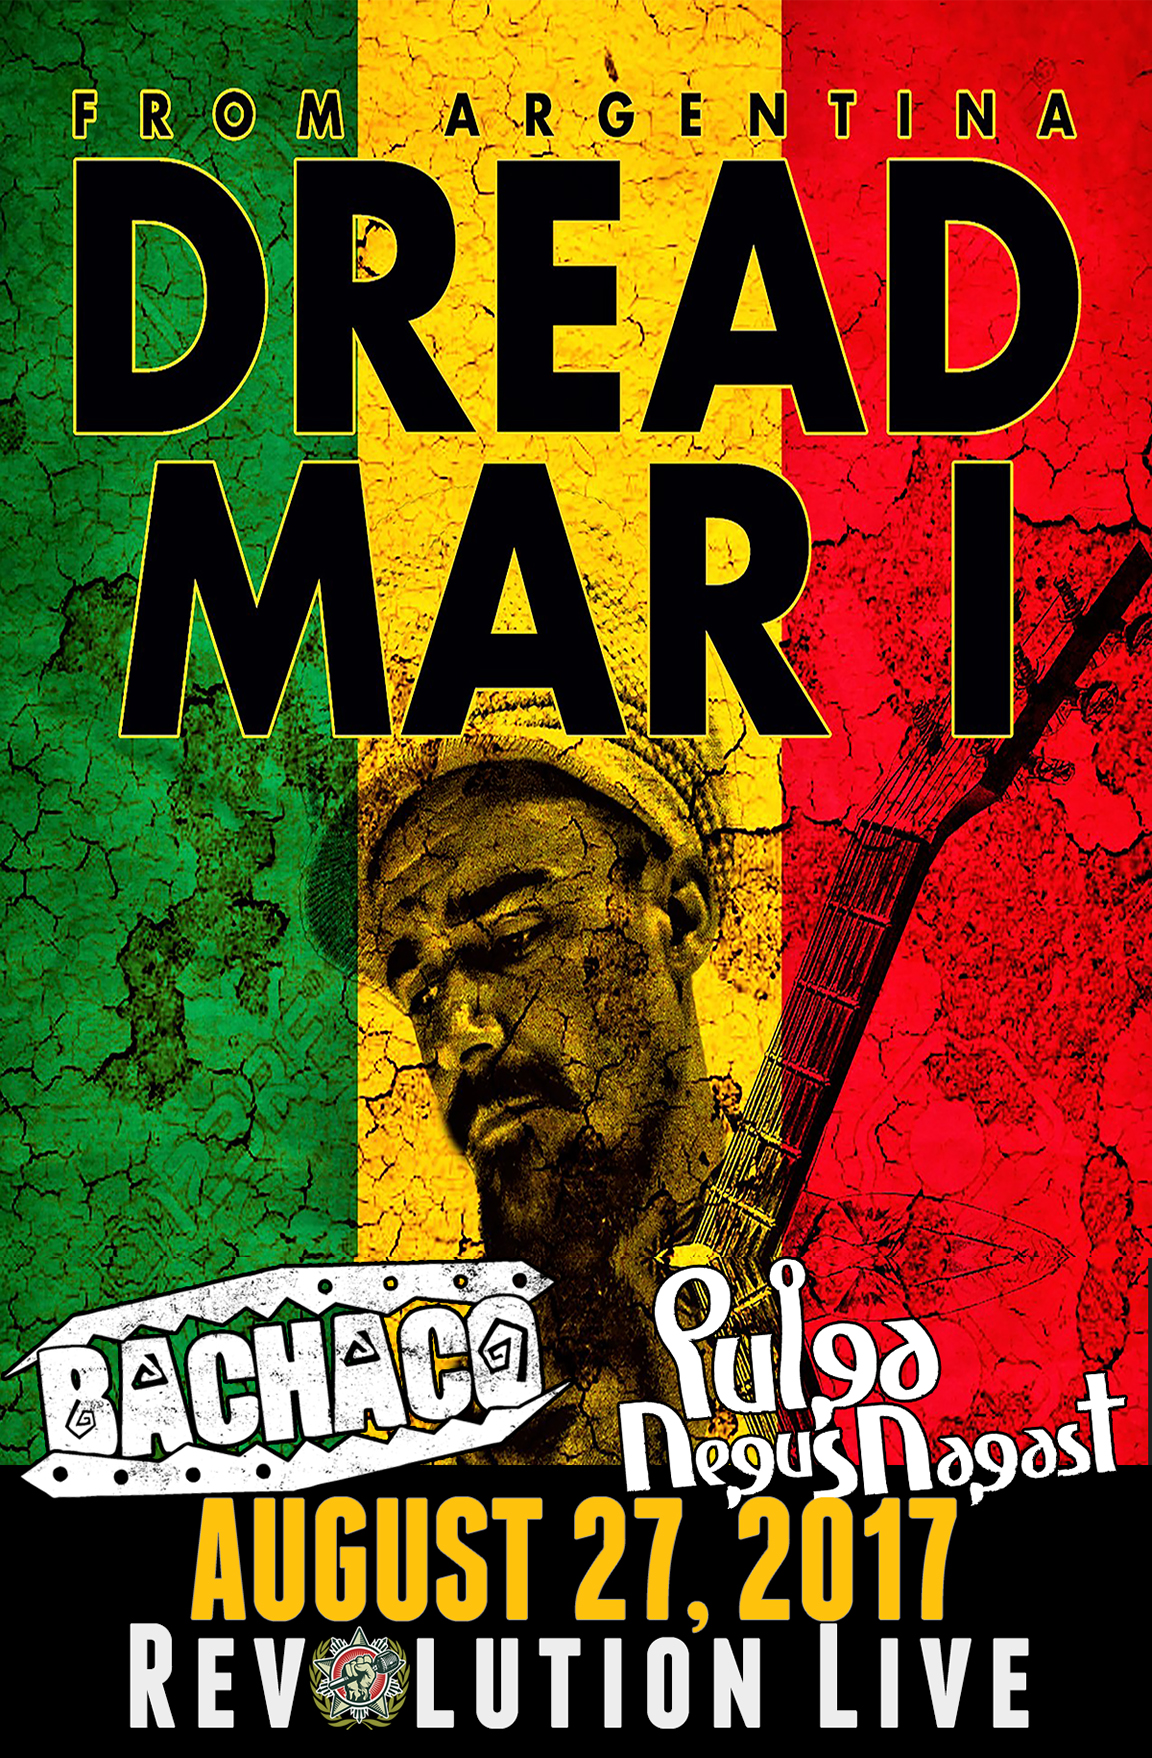 Dread Mar I w/ Bachaco & pulga negus nagast Revolution Live